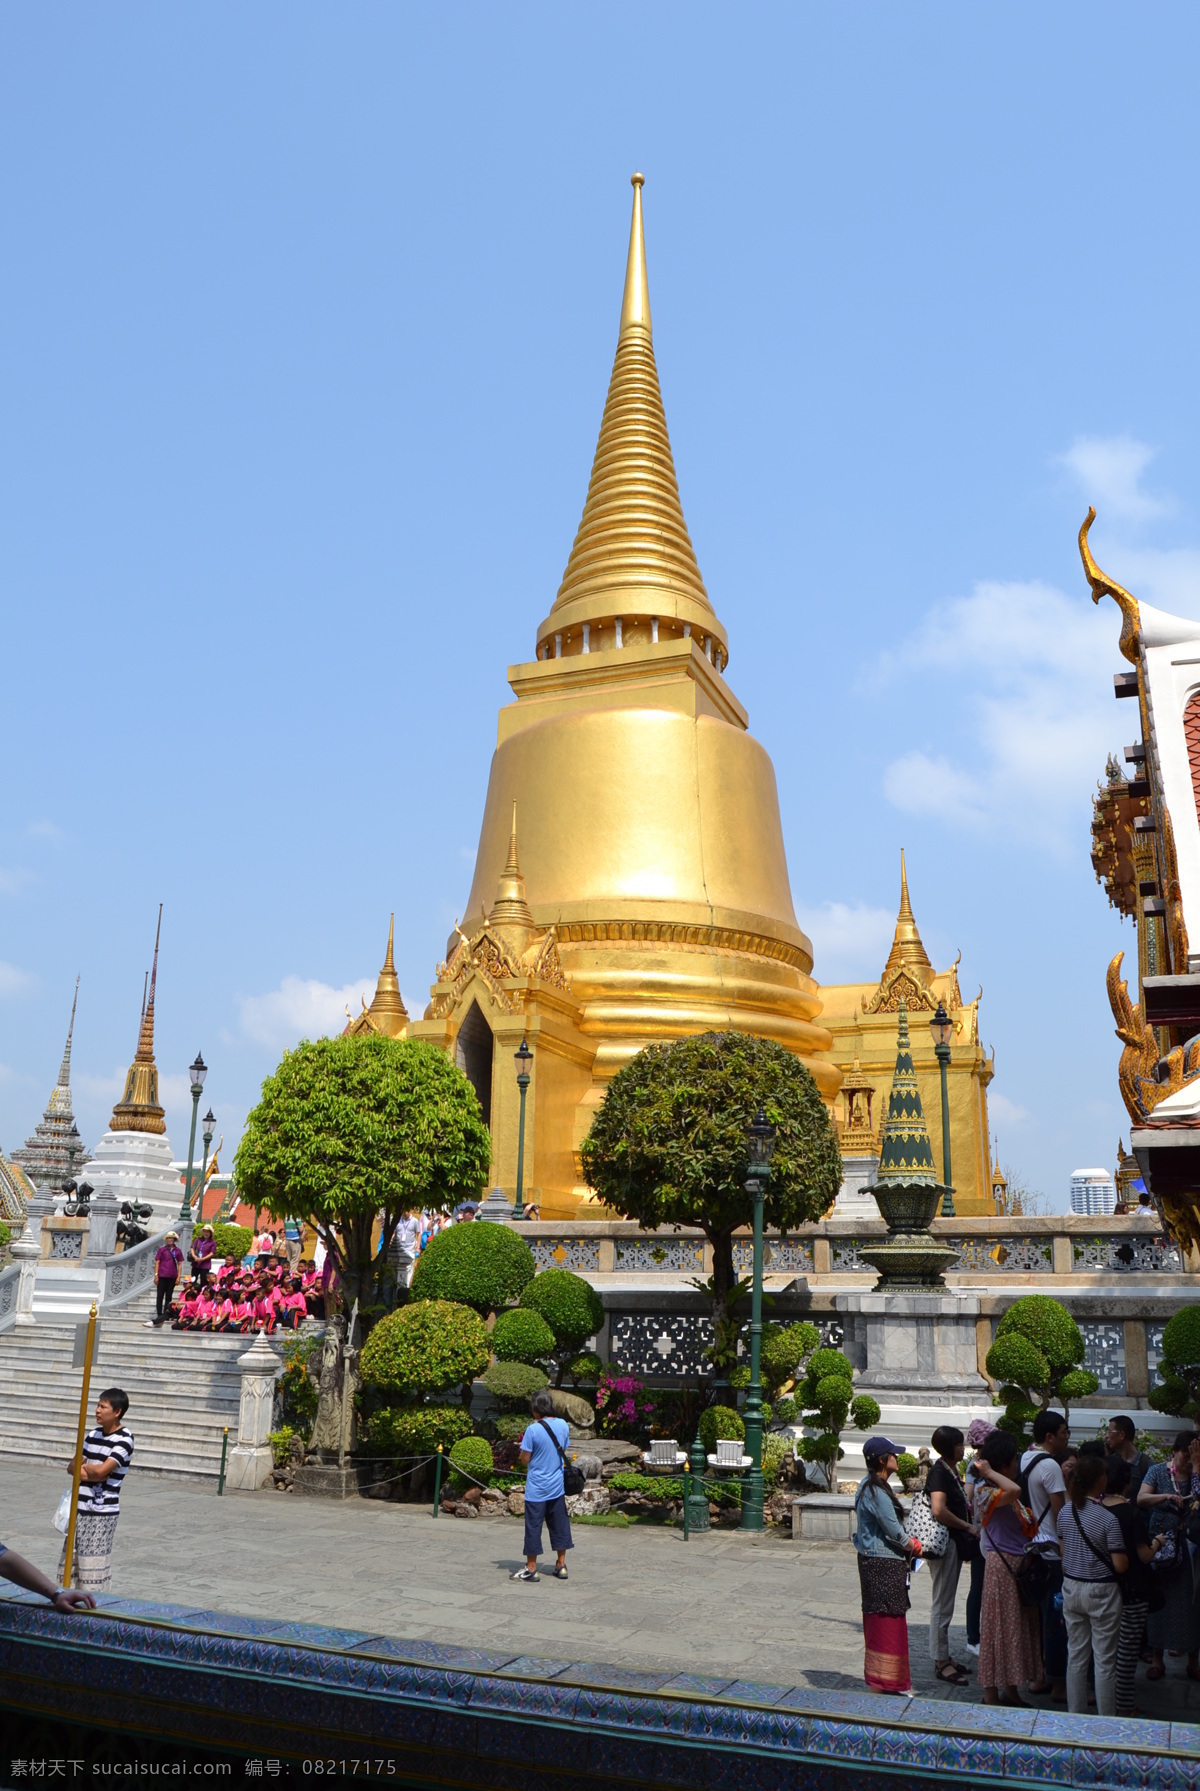 泰国风情 泰国 塔 金色 教堂 民俗 风景素材 旅游摄影 国内旅游